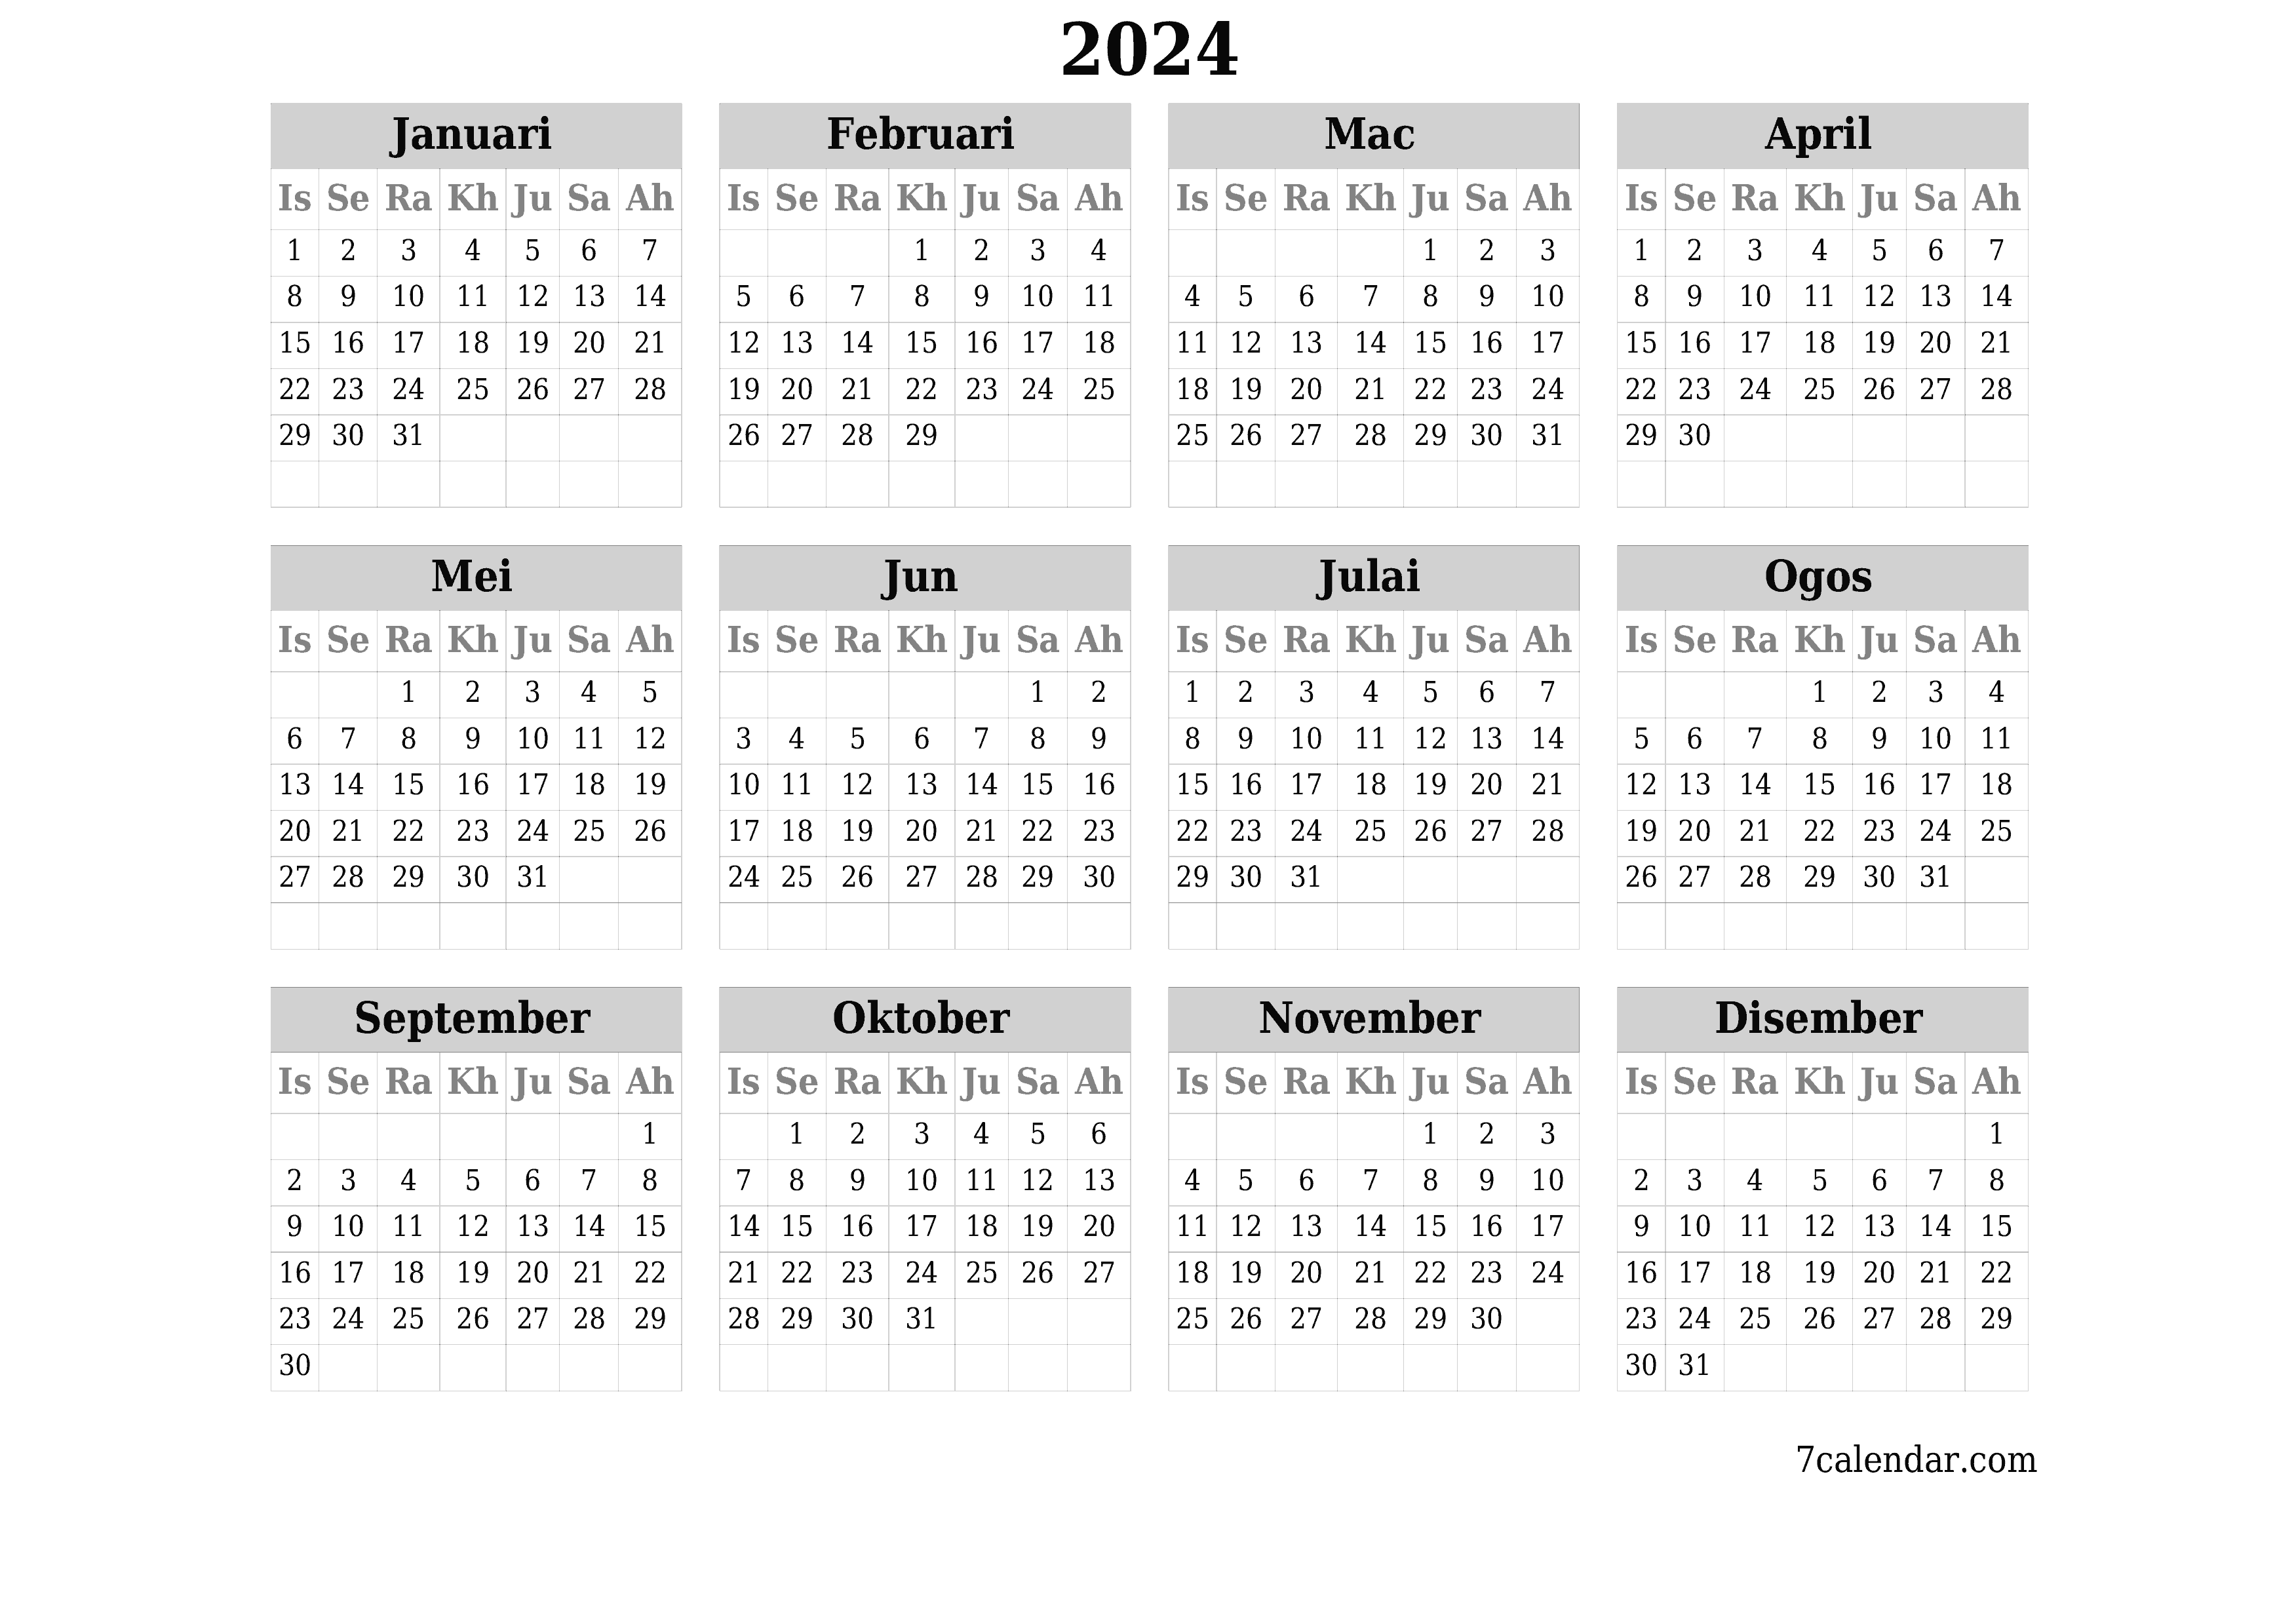  boleh cetak dinding templat percumamendatar Tahunan kalendar Mac (Mar) 2024